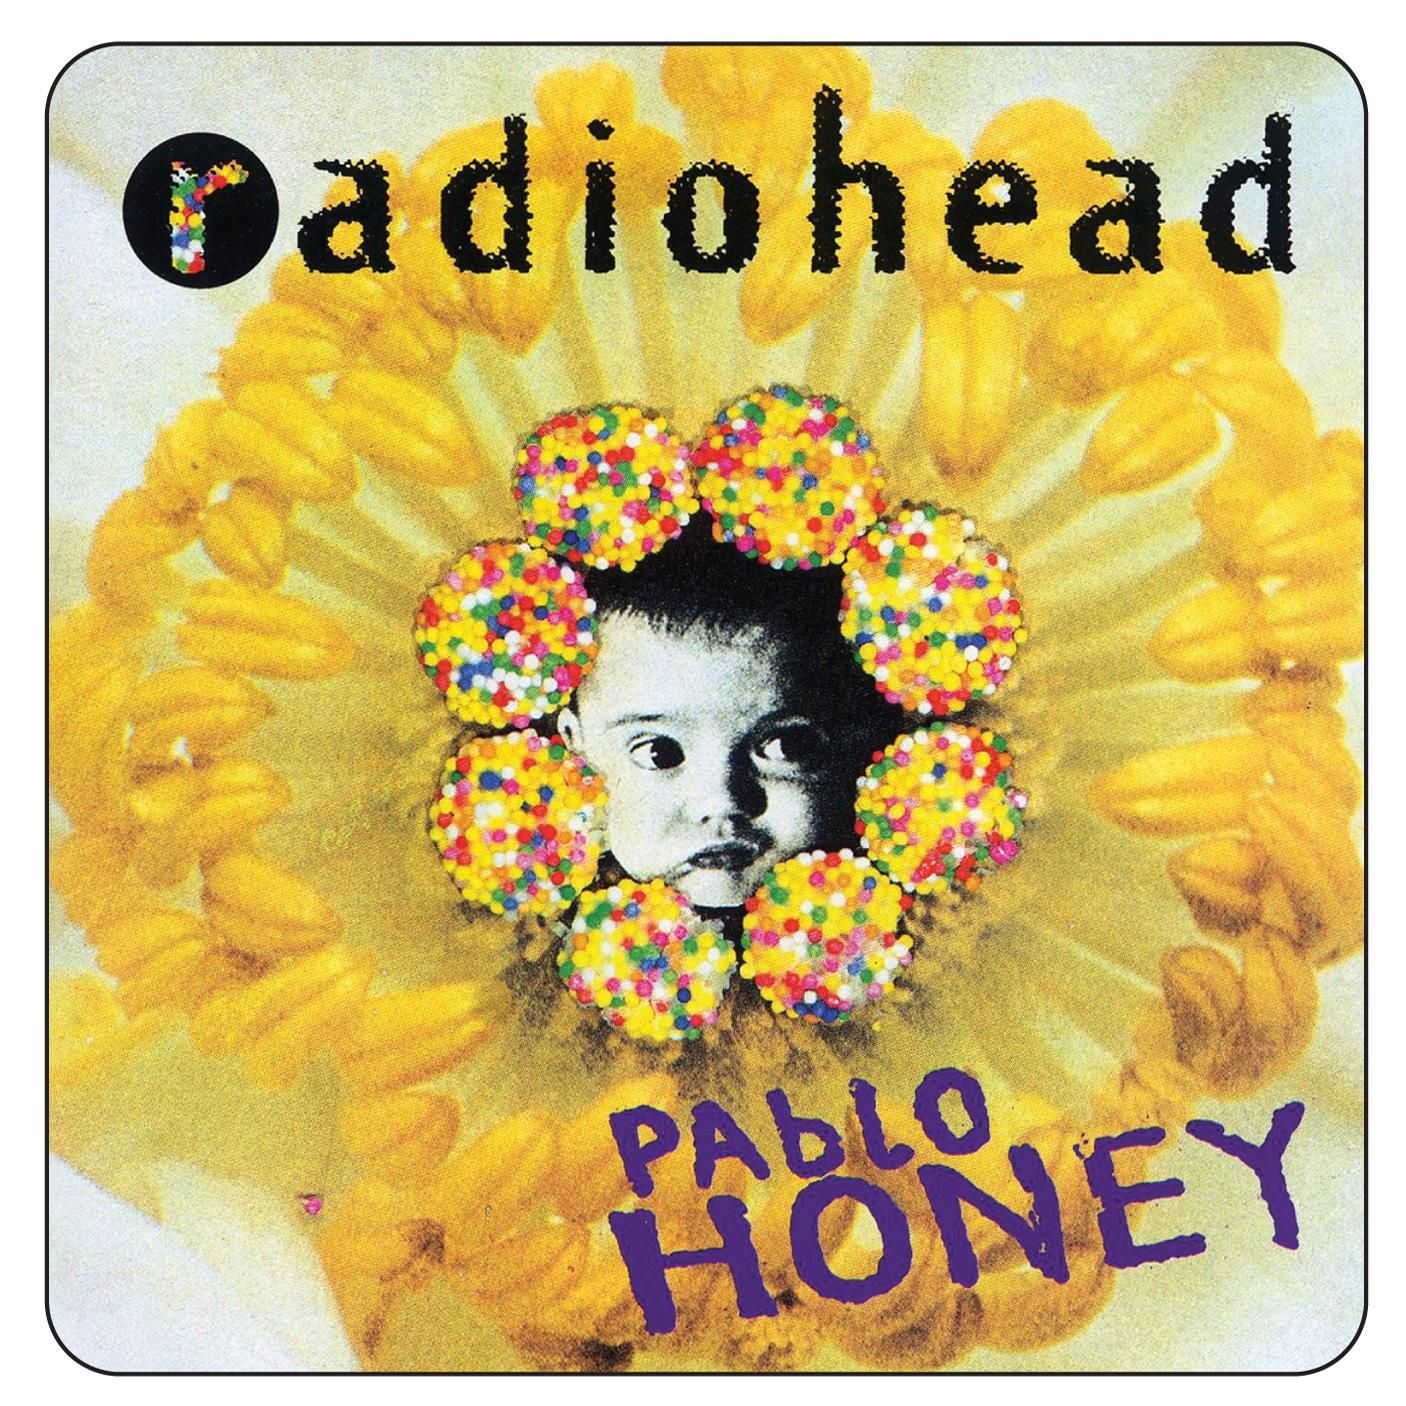 RadioheadPabloHoney